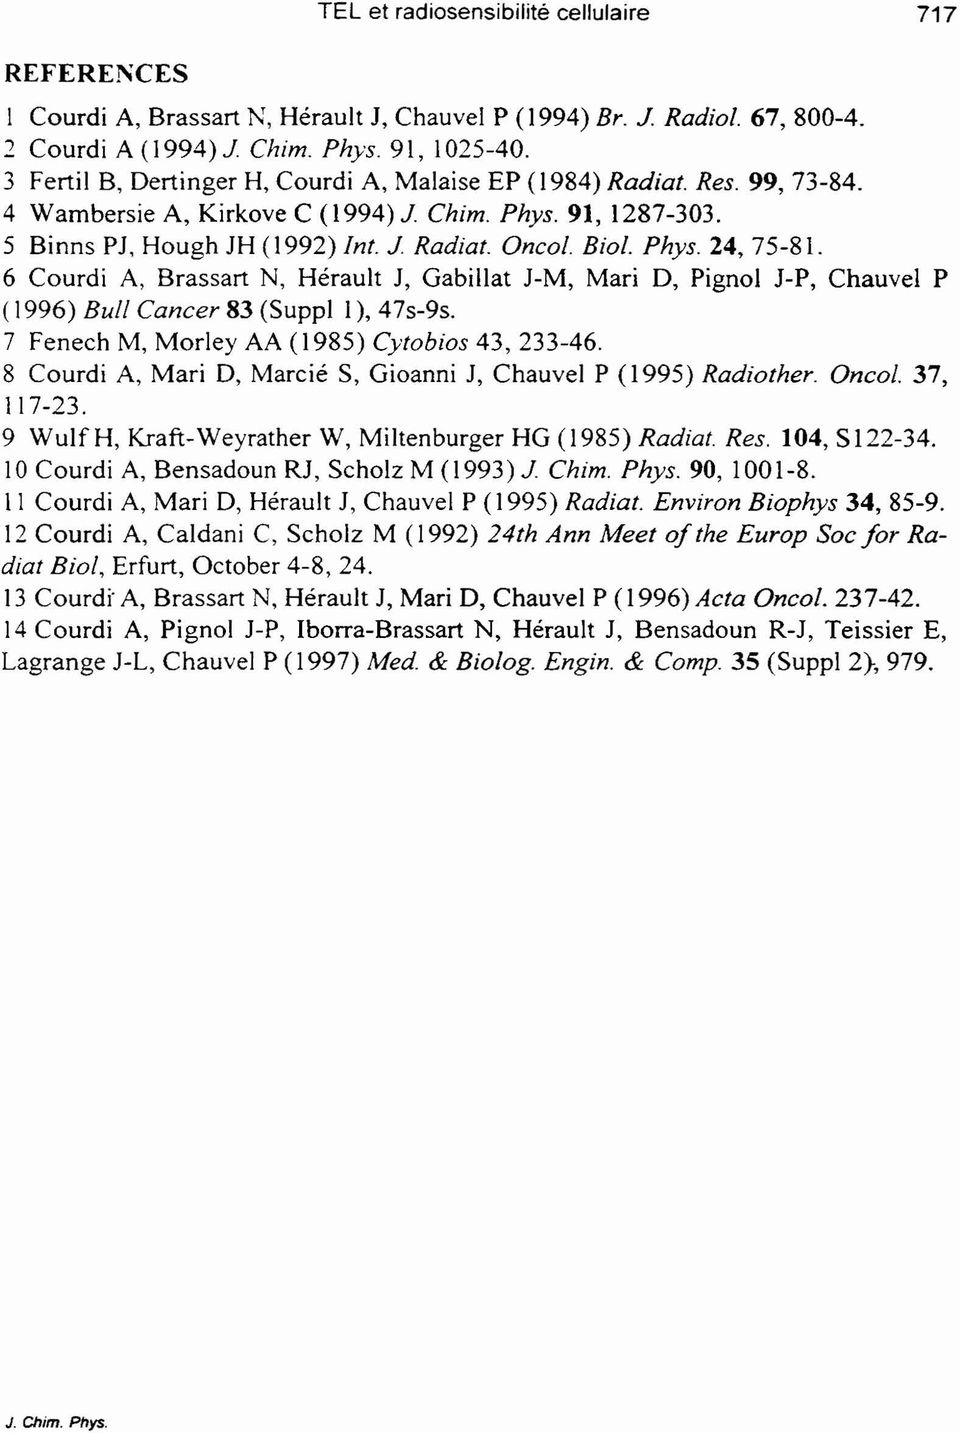 6 Courdi A, Brssrt N, Hérult J, Gbillt J-M, Mri D, ignol J-, Chuvel ( 1996) Bull Cncer 83 (Suppl 1 ), 47s-9s. 7 Fenech M, Morley AA (1985) C'tobios 43,233-46.